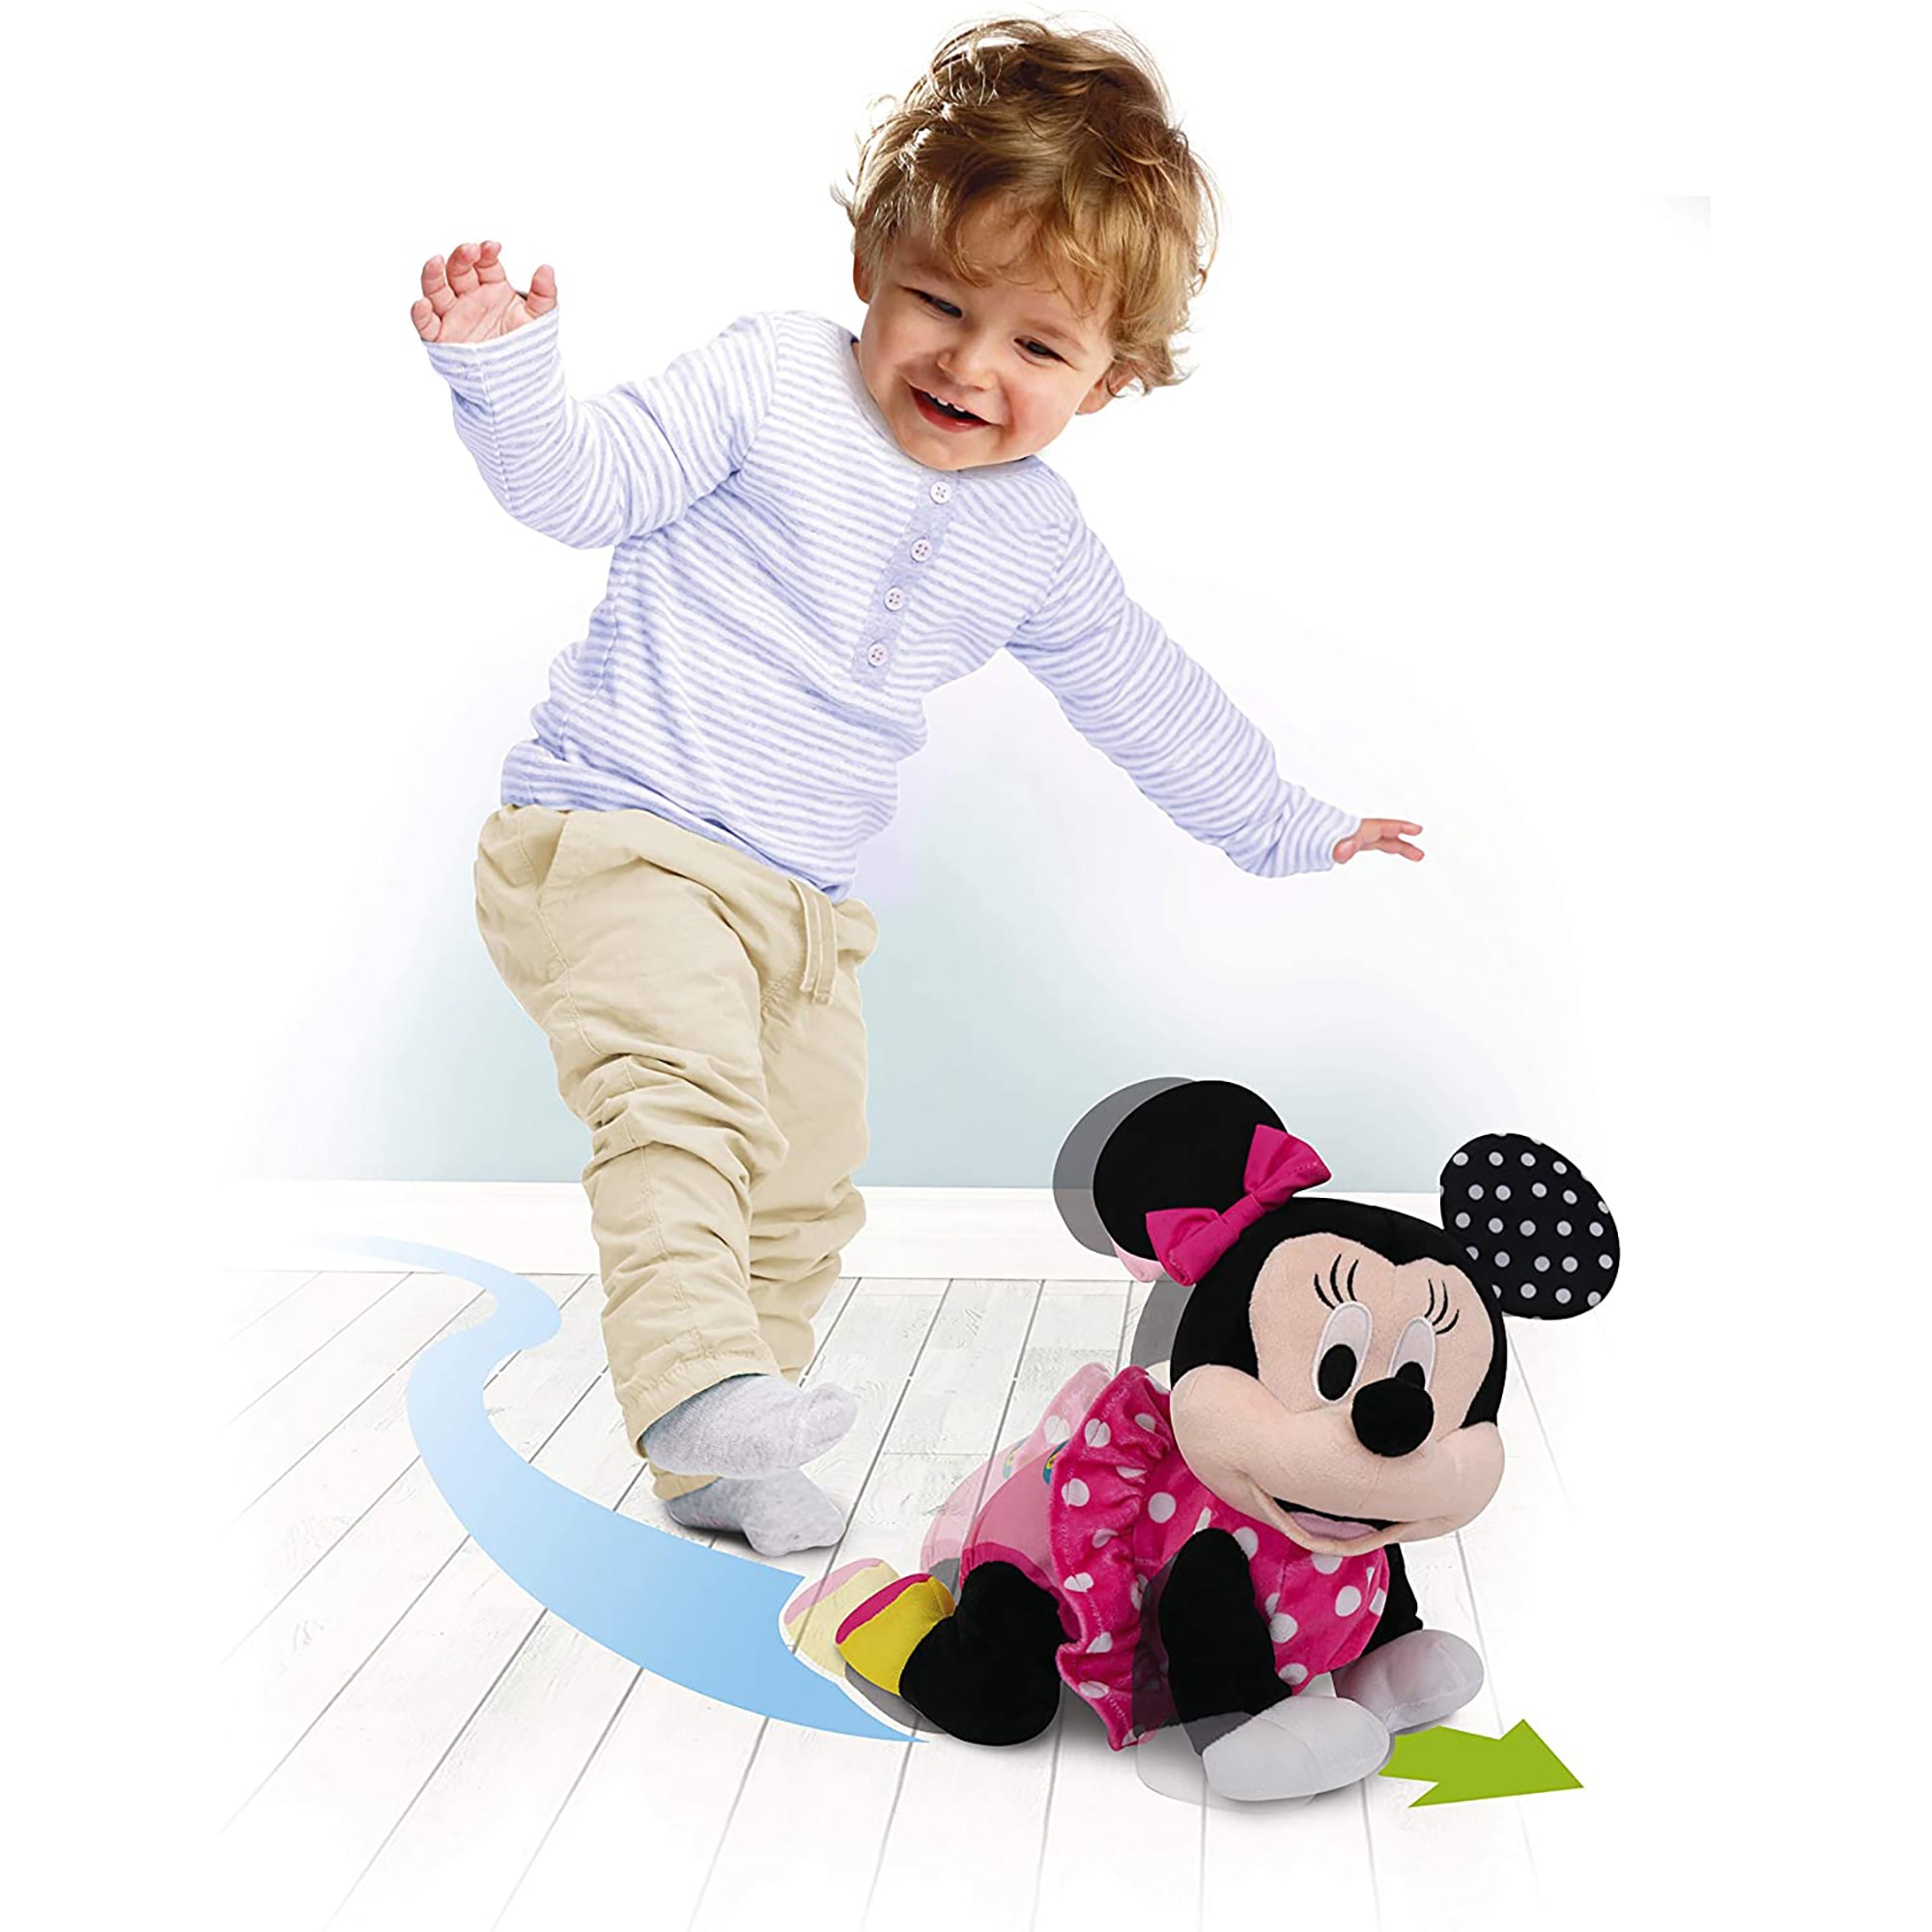 CLEMENTONI Projecteur Baby Minnie - Disney Baby pas cher 